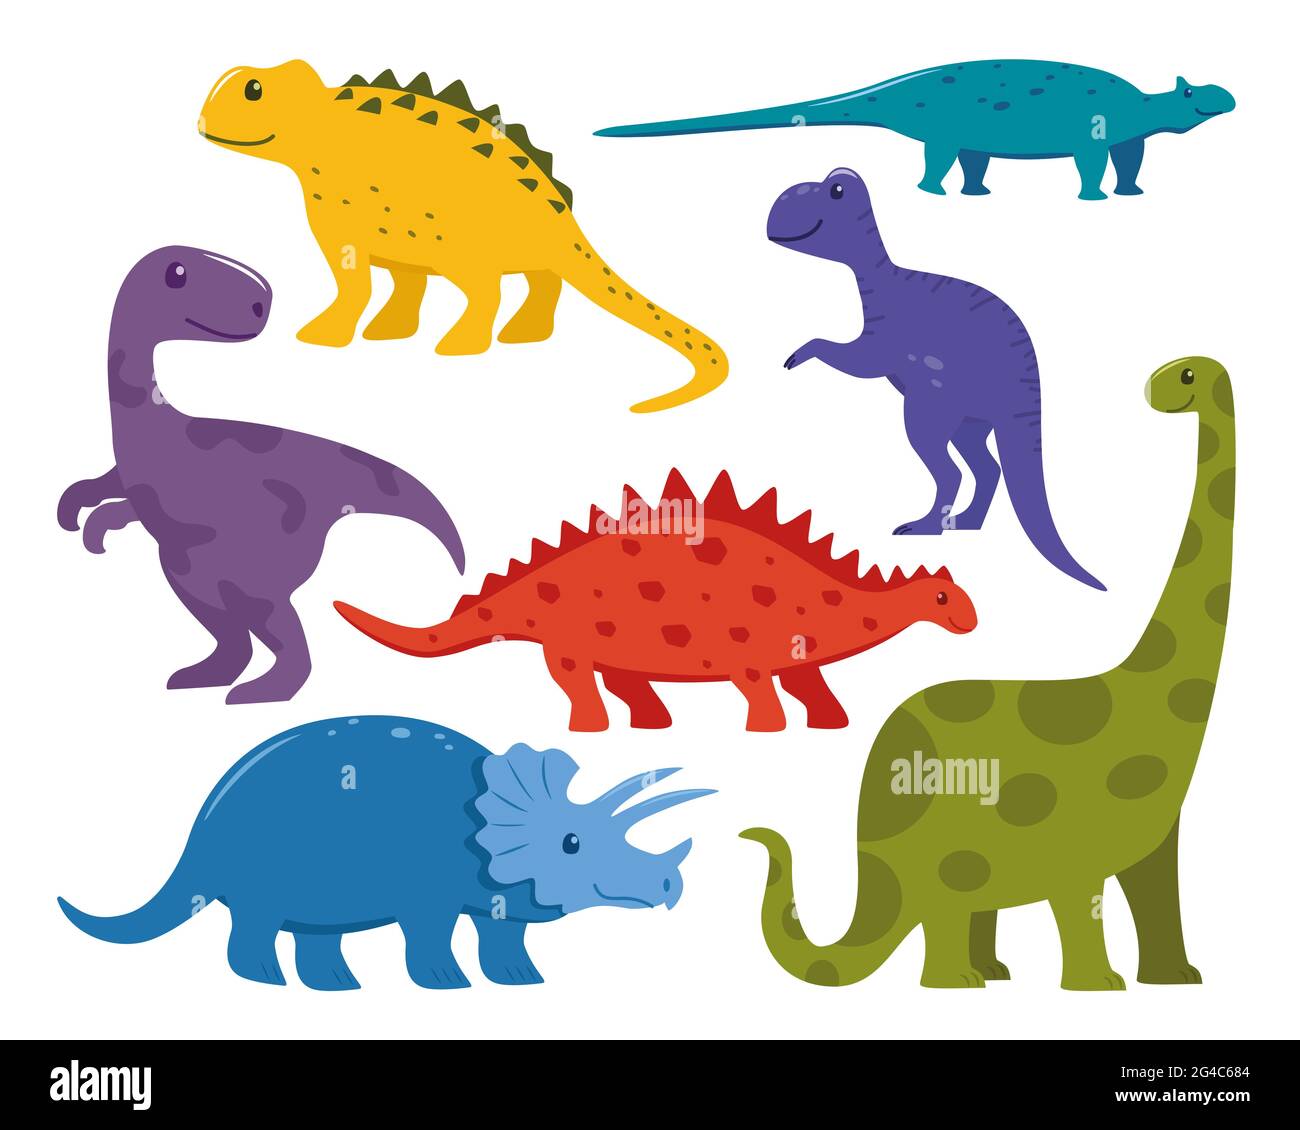 Dinosaurier Big Set. Sammlung von prähistorischen jurrasic Periode wilden Fauna. Niedliche bunte Dinosaurier im Cartoon-Stil. Vektorgrafik Stock Vektor